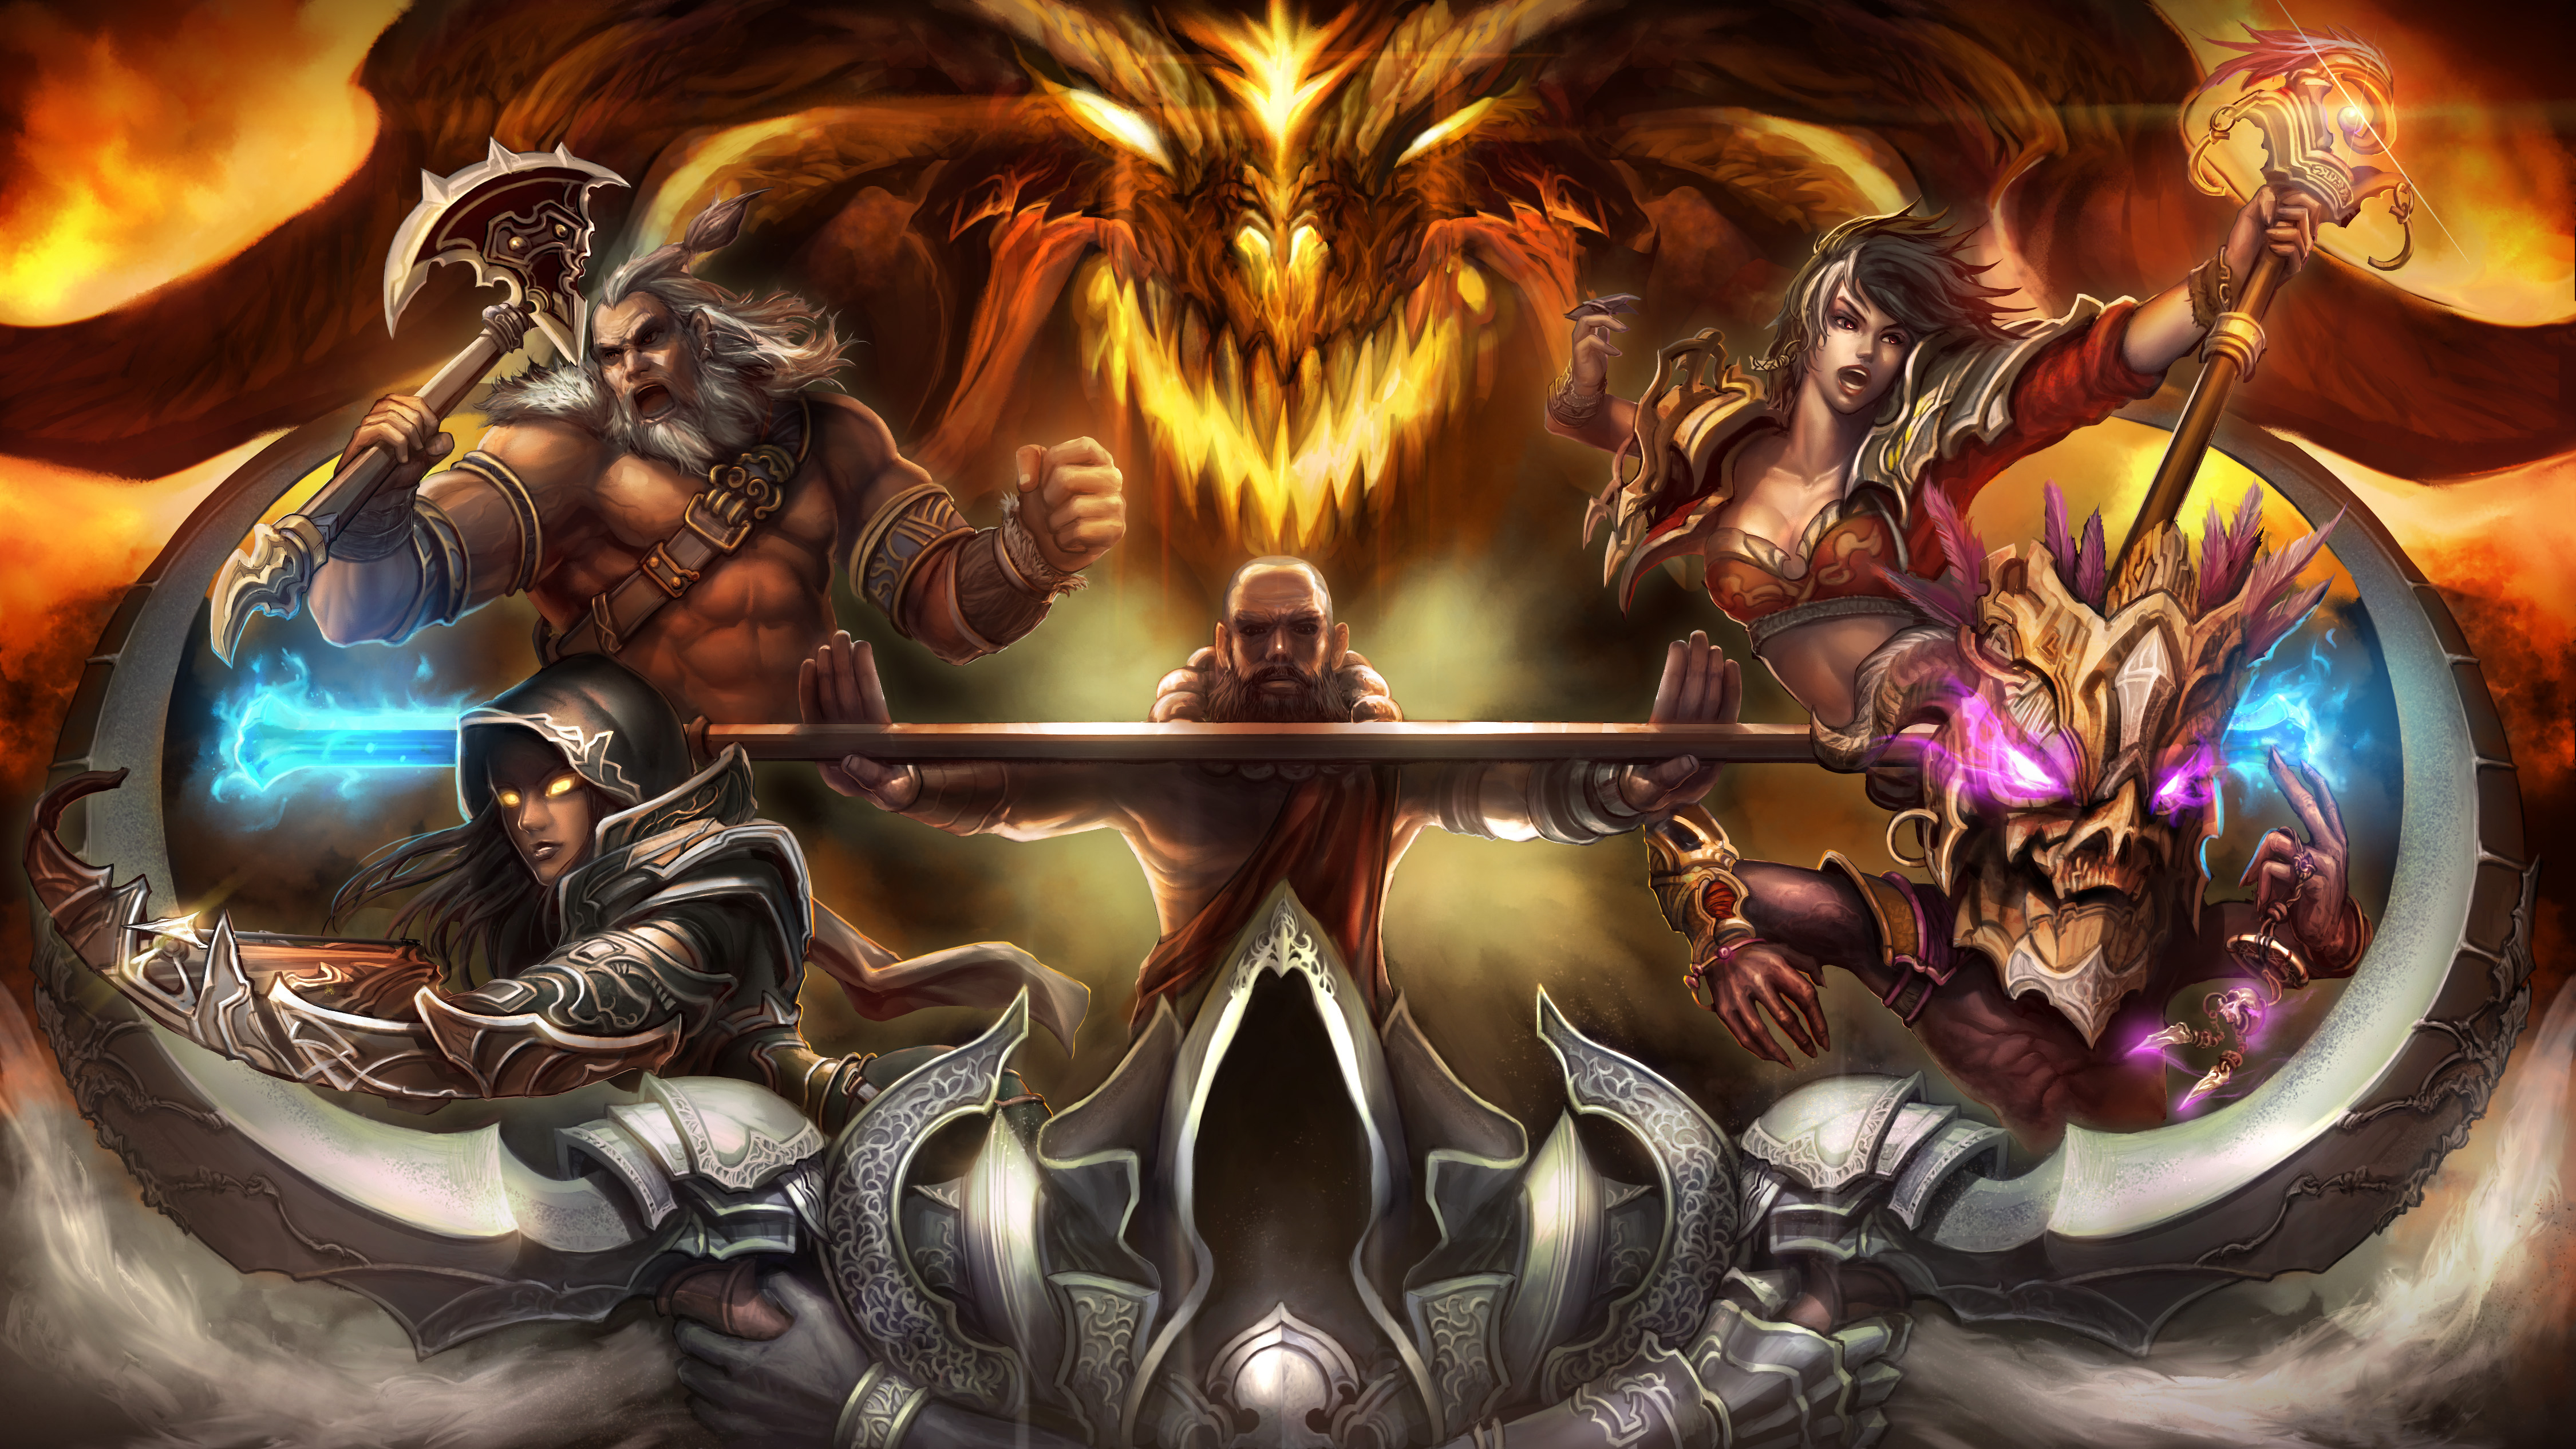  Diablo Iii: Reaper Of Souls Lock Screen PC Wallpaper